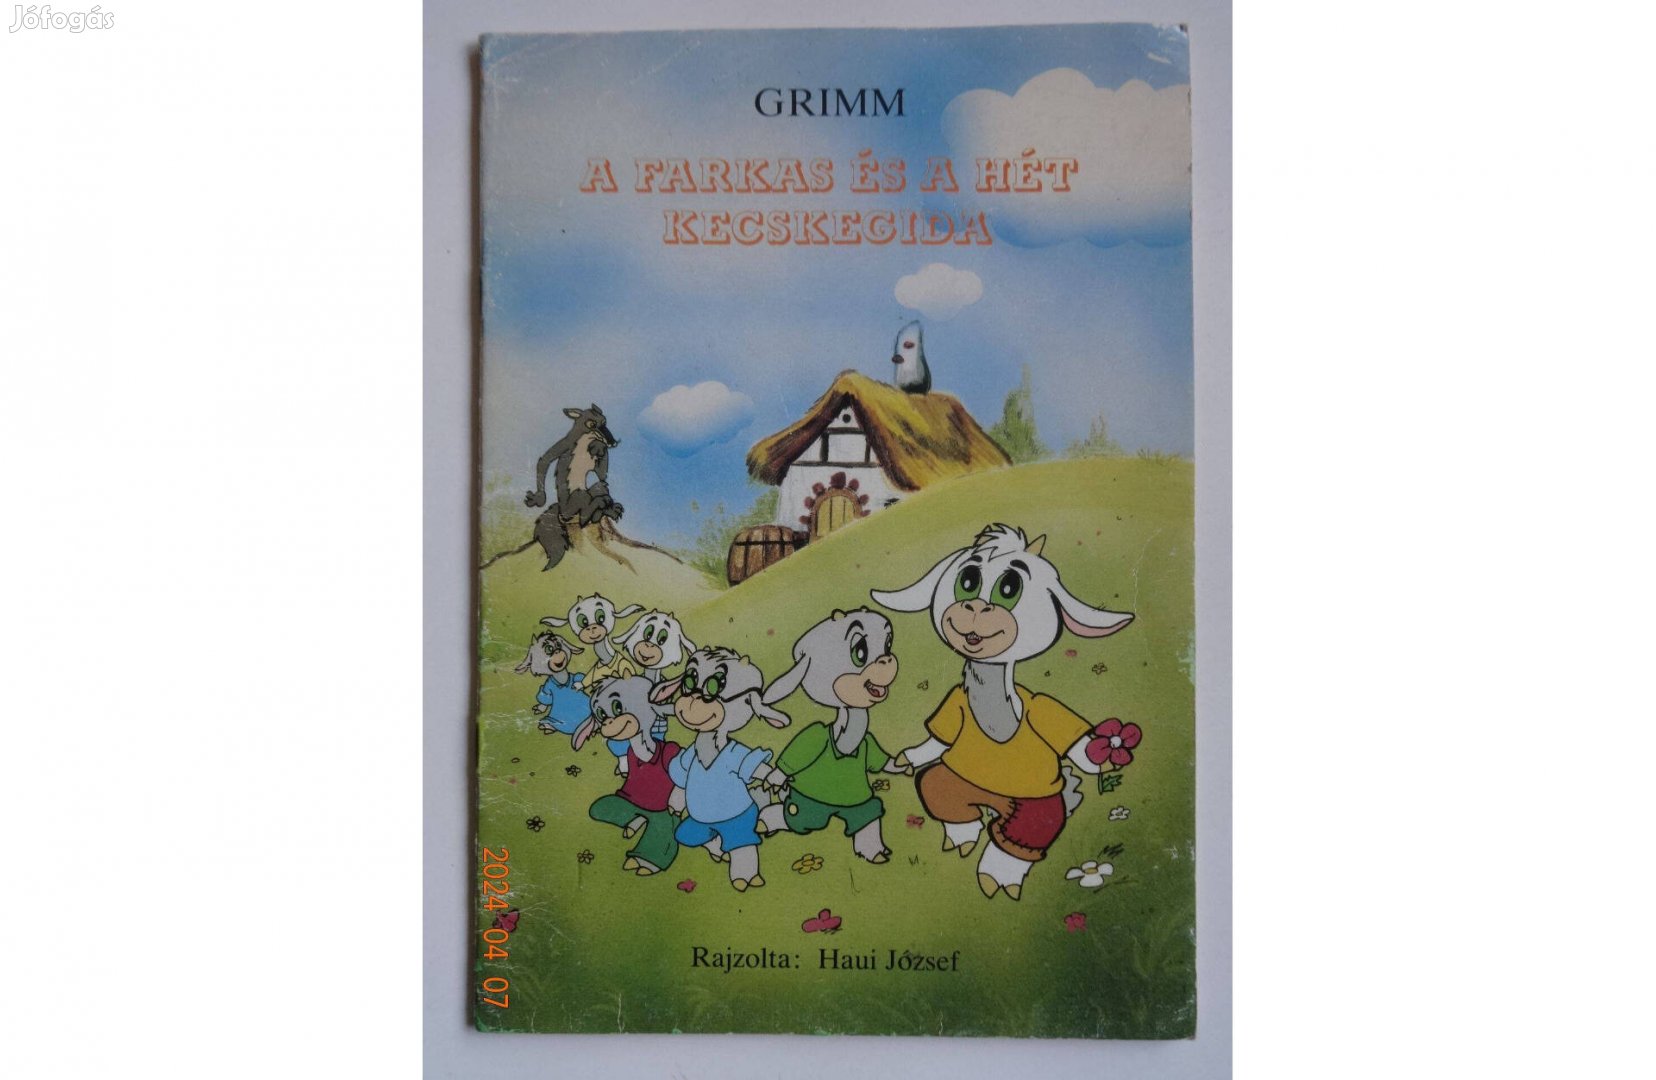 Grimm: A farkas és a hét kecskegida - régi mesefüzet Haui József rajz